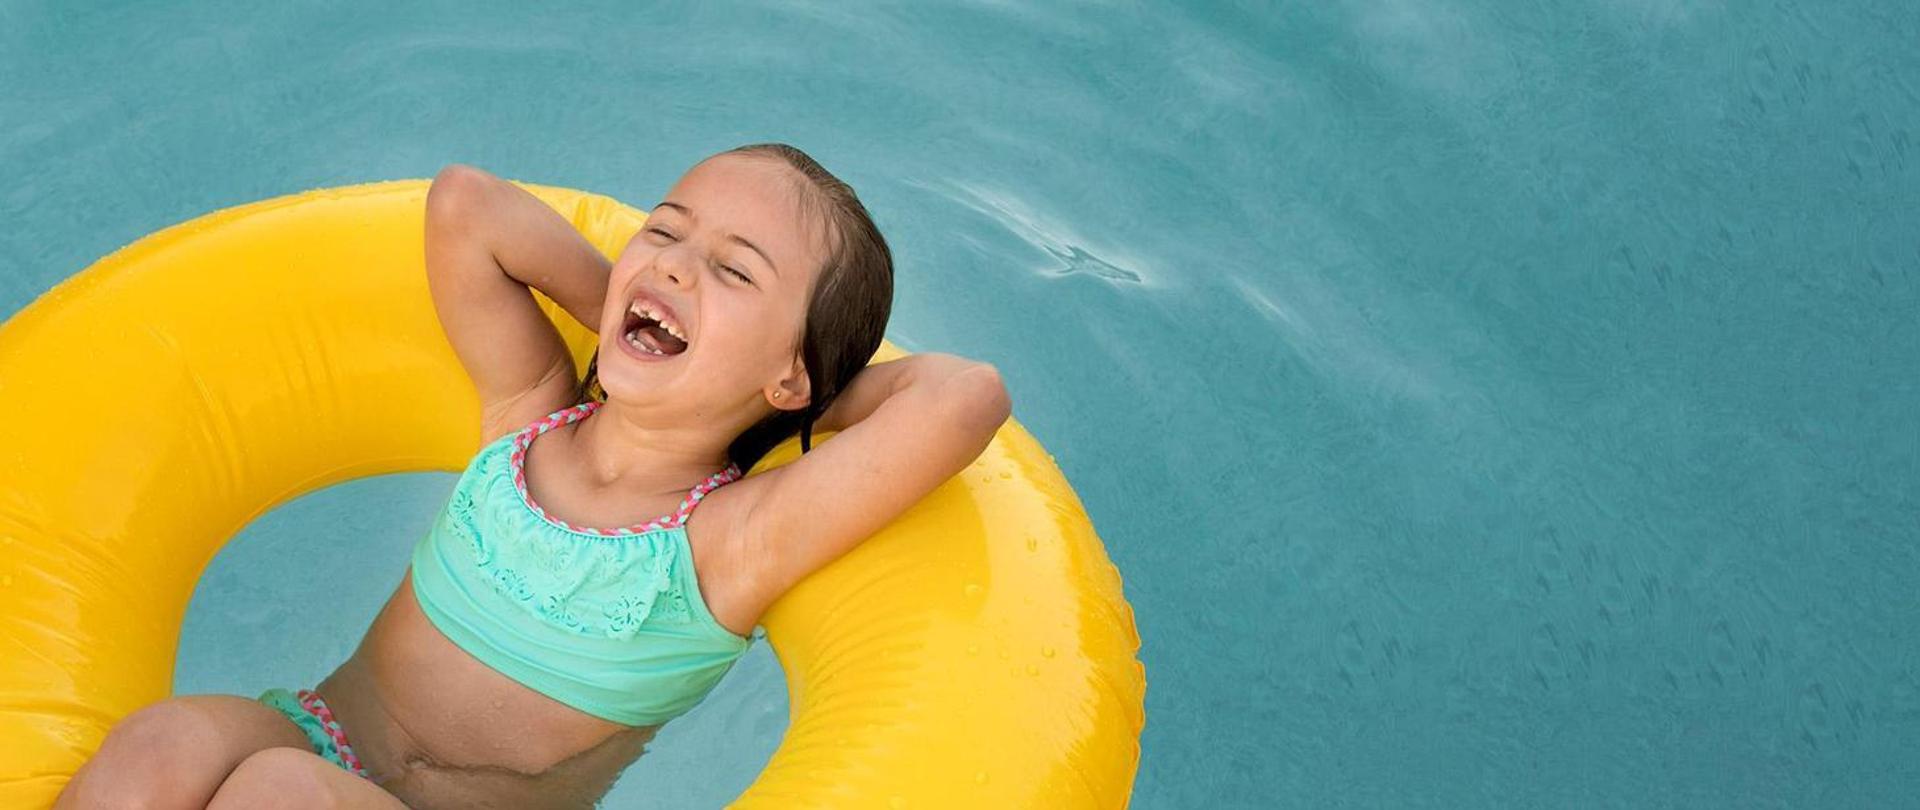 Roześmiana dziewczynka pływa w dmuchanym kole w basenie